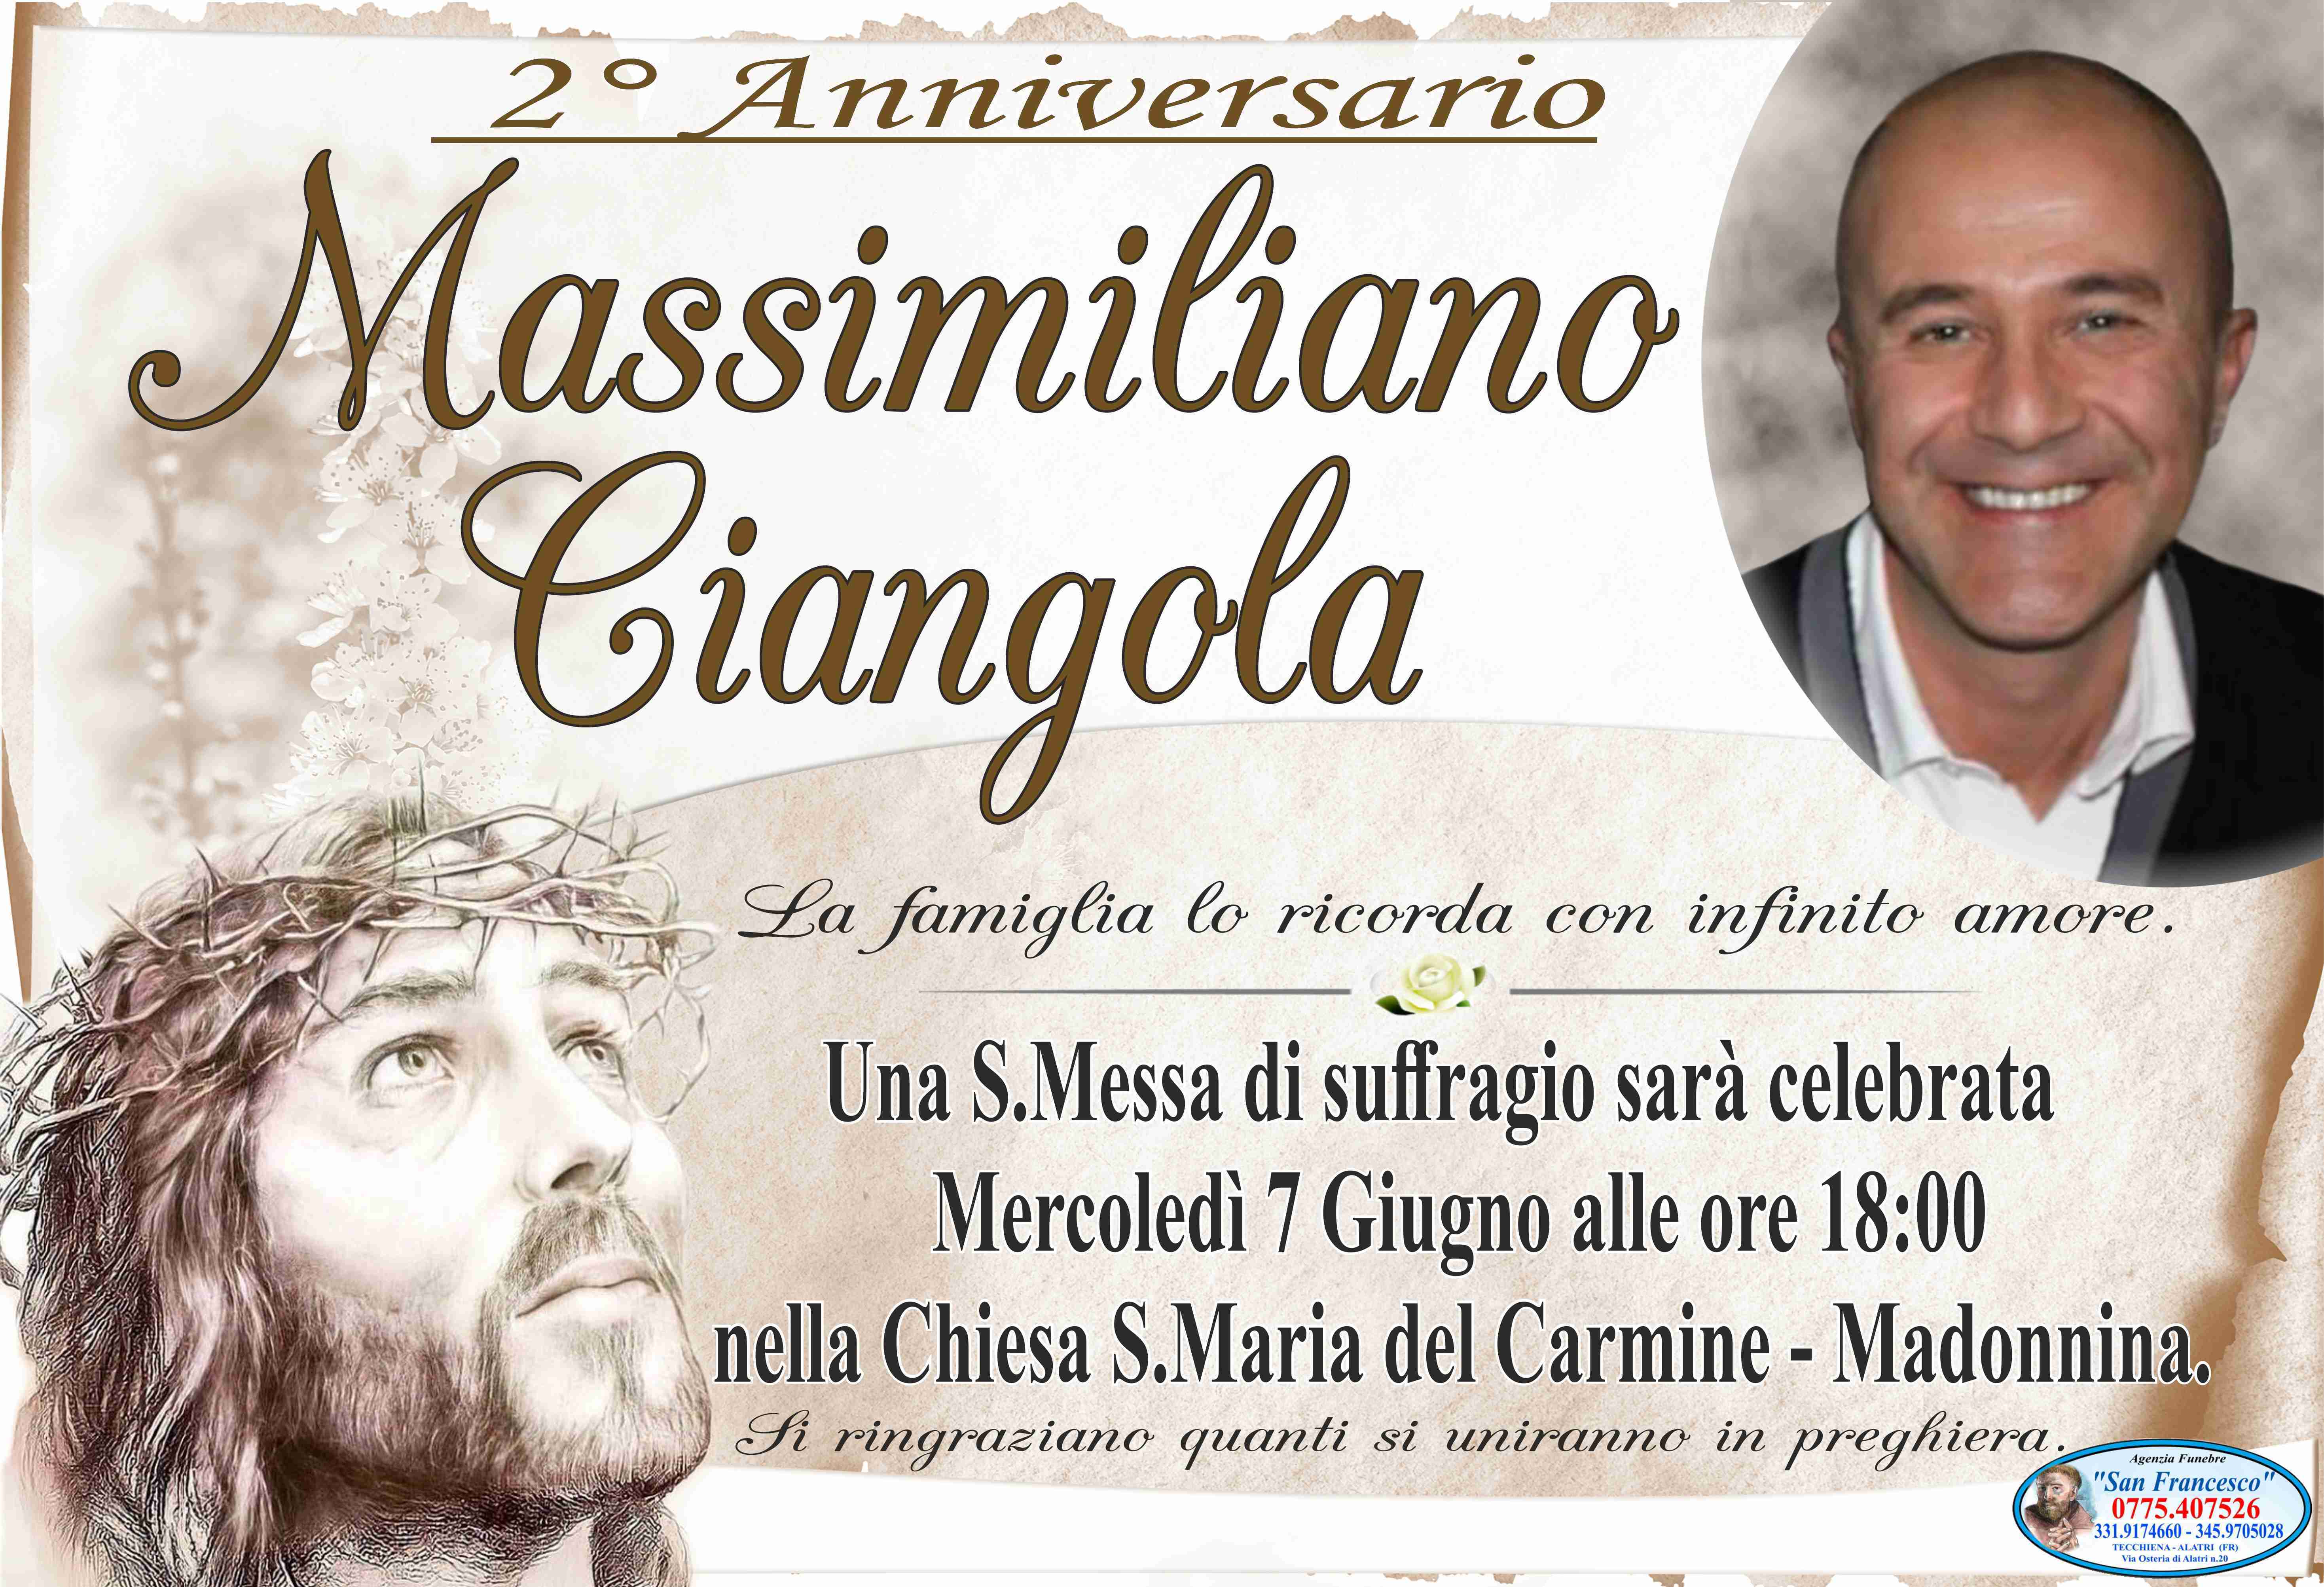 Massimiliano Ciangola